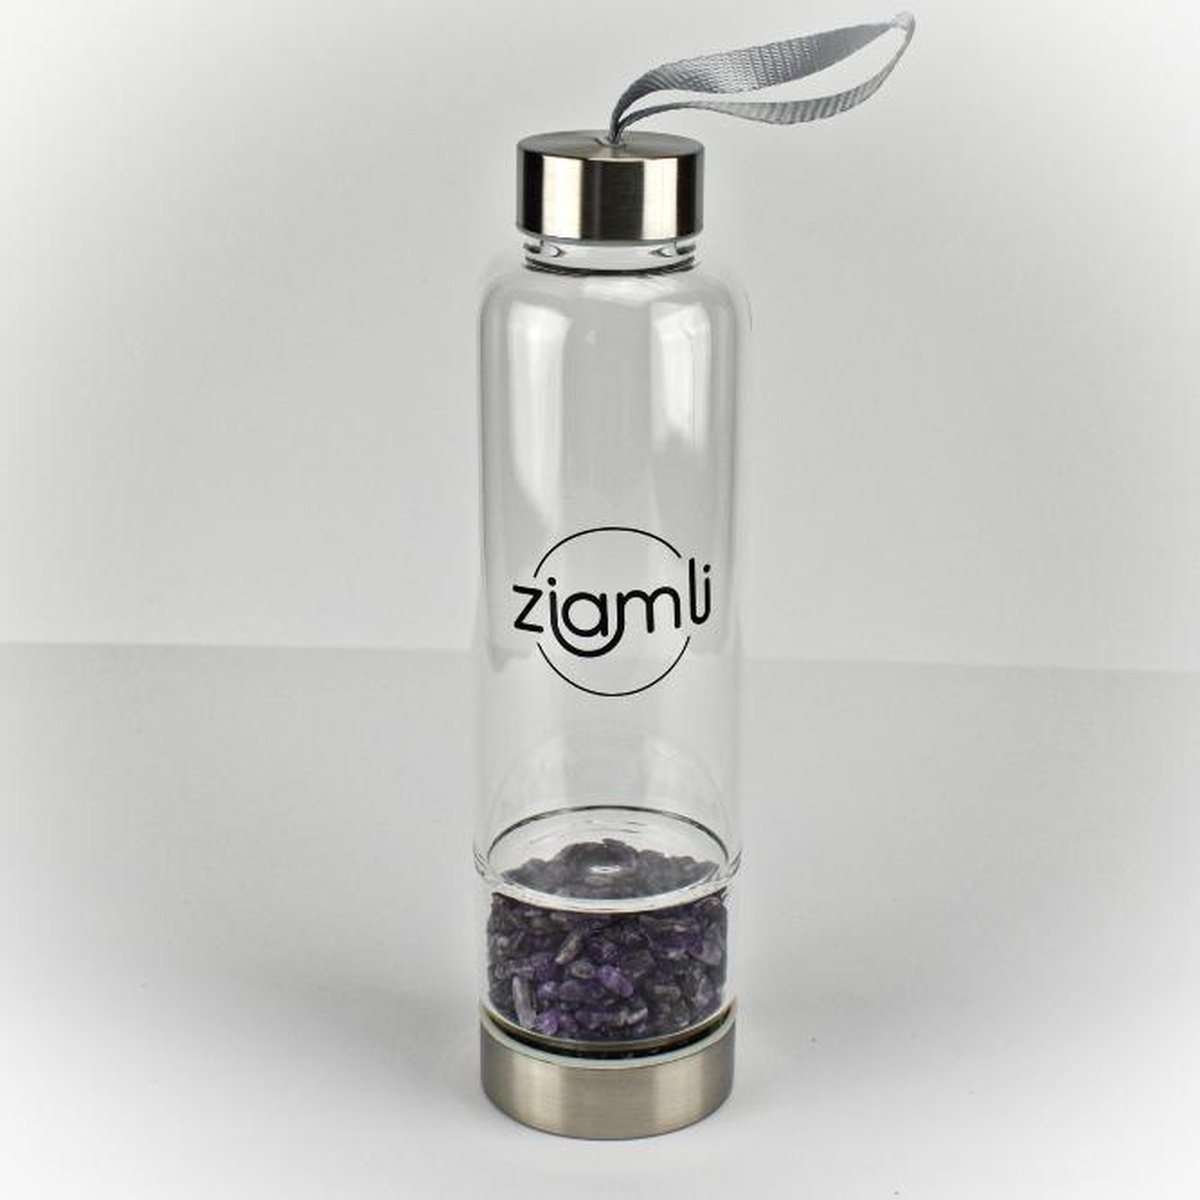 Ziamli Waterfles - Amethist - Waterfles met kristal - Crystal water bottle - Waterfles kristal glas